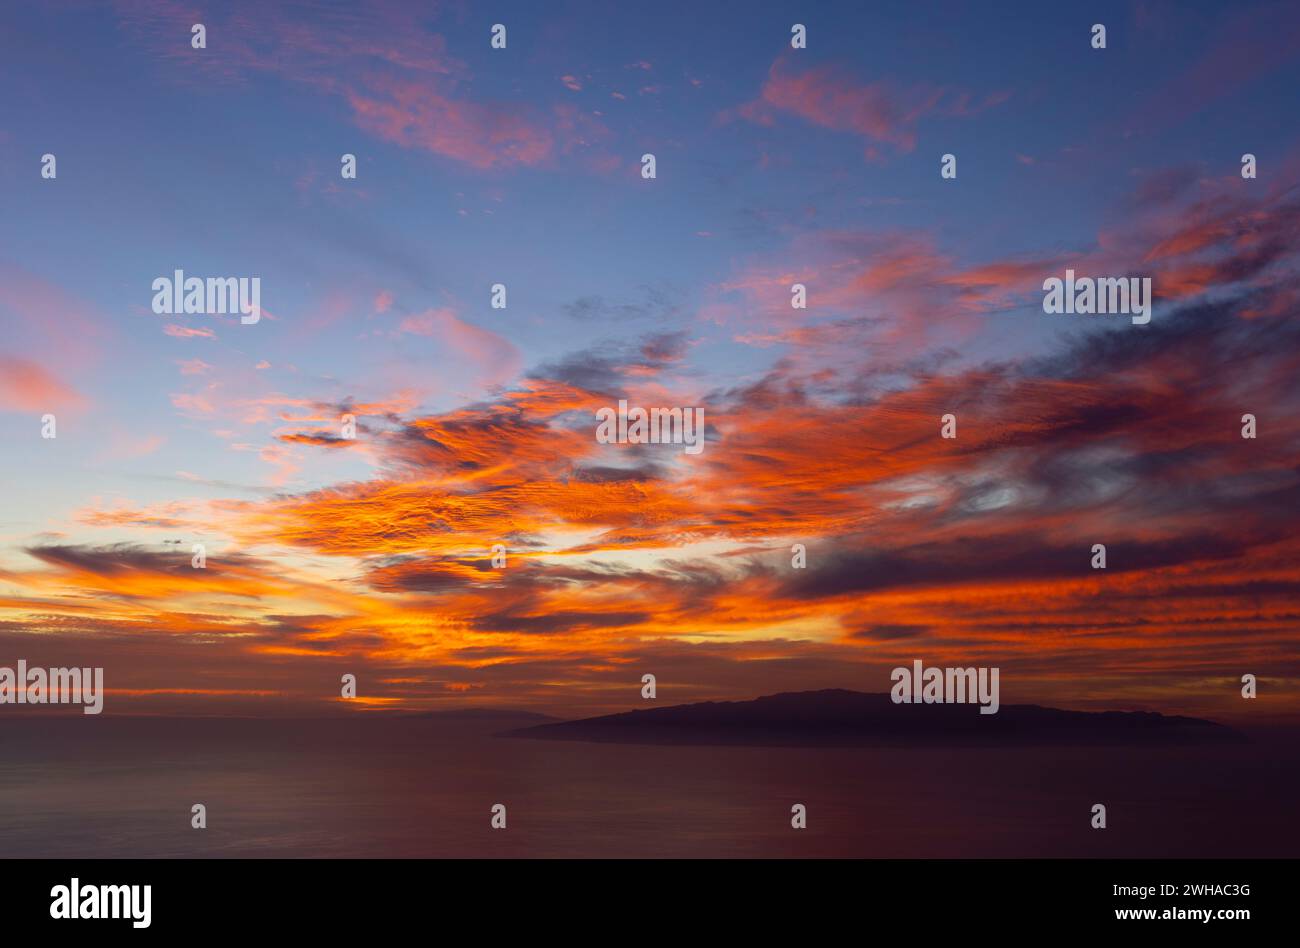 spettacolare tramonto con nuvole rosse e arancioni come pennellate nel cielo blu. spettacolo della natura. il cielo in fiamme Foto Stock